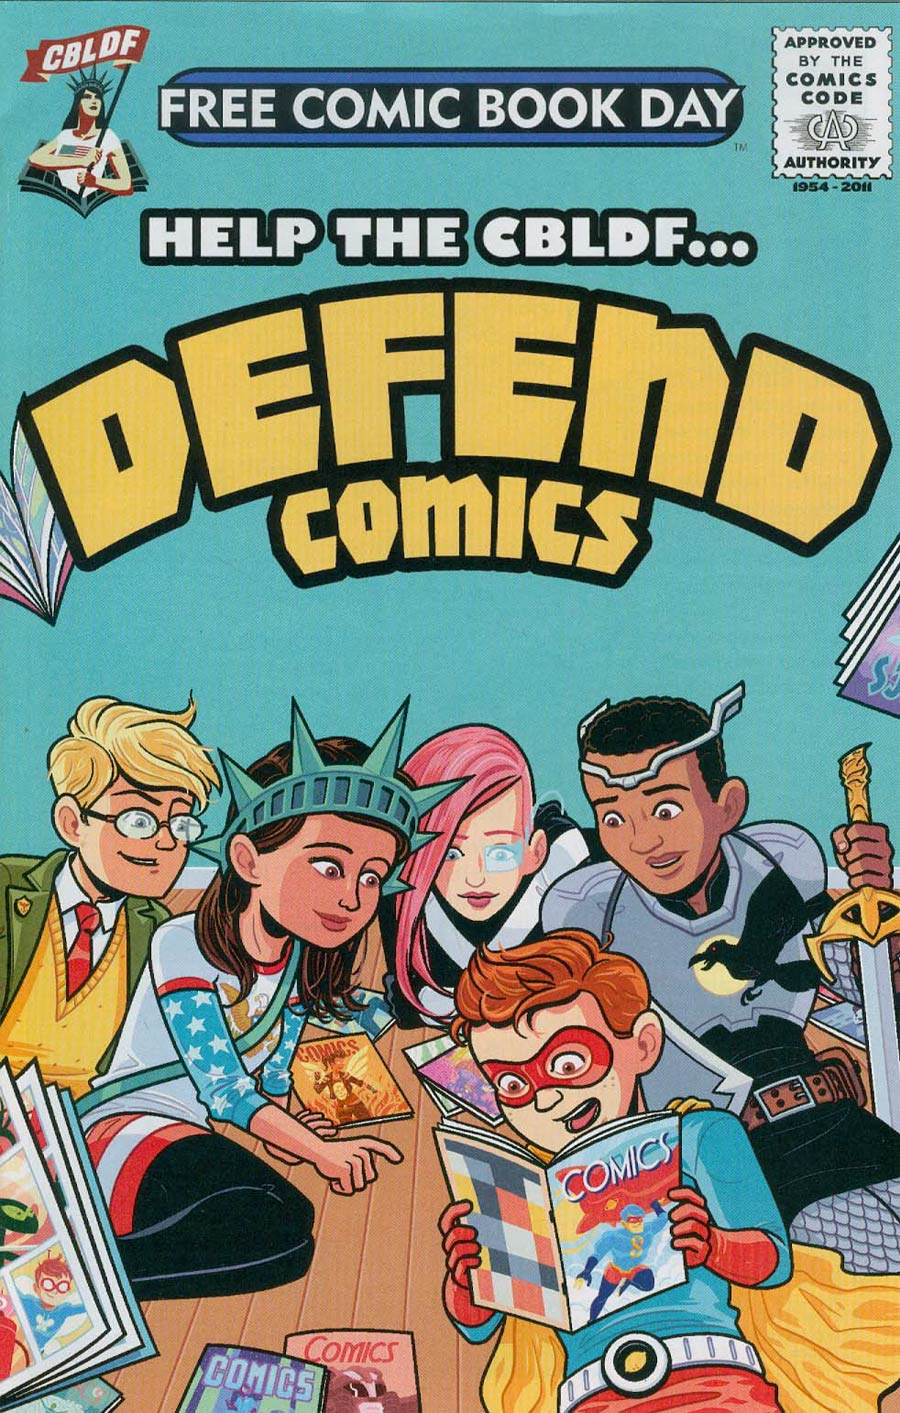 FCBD 2015 CBLDF Defend Comics